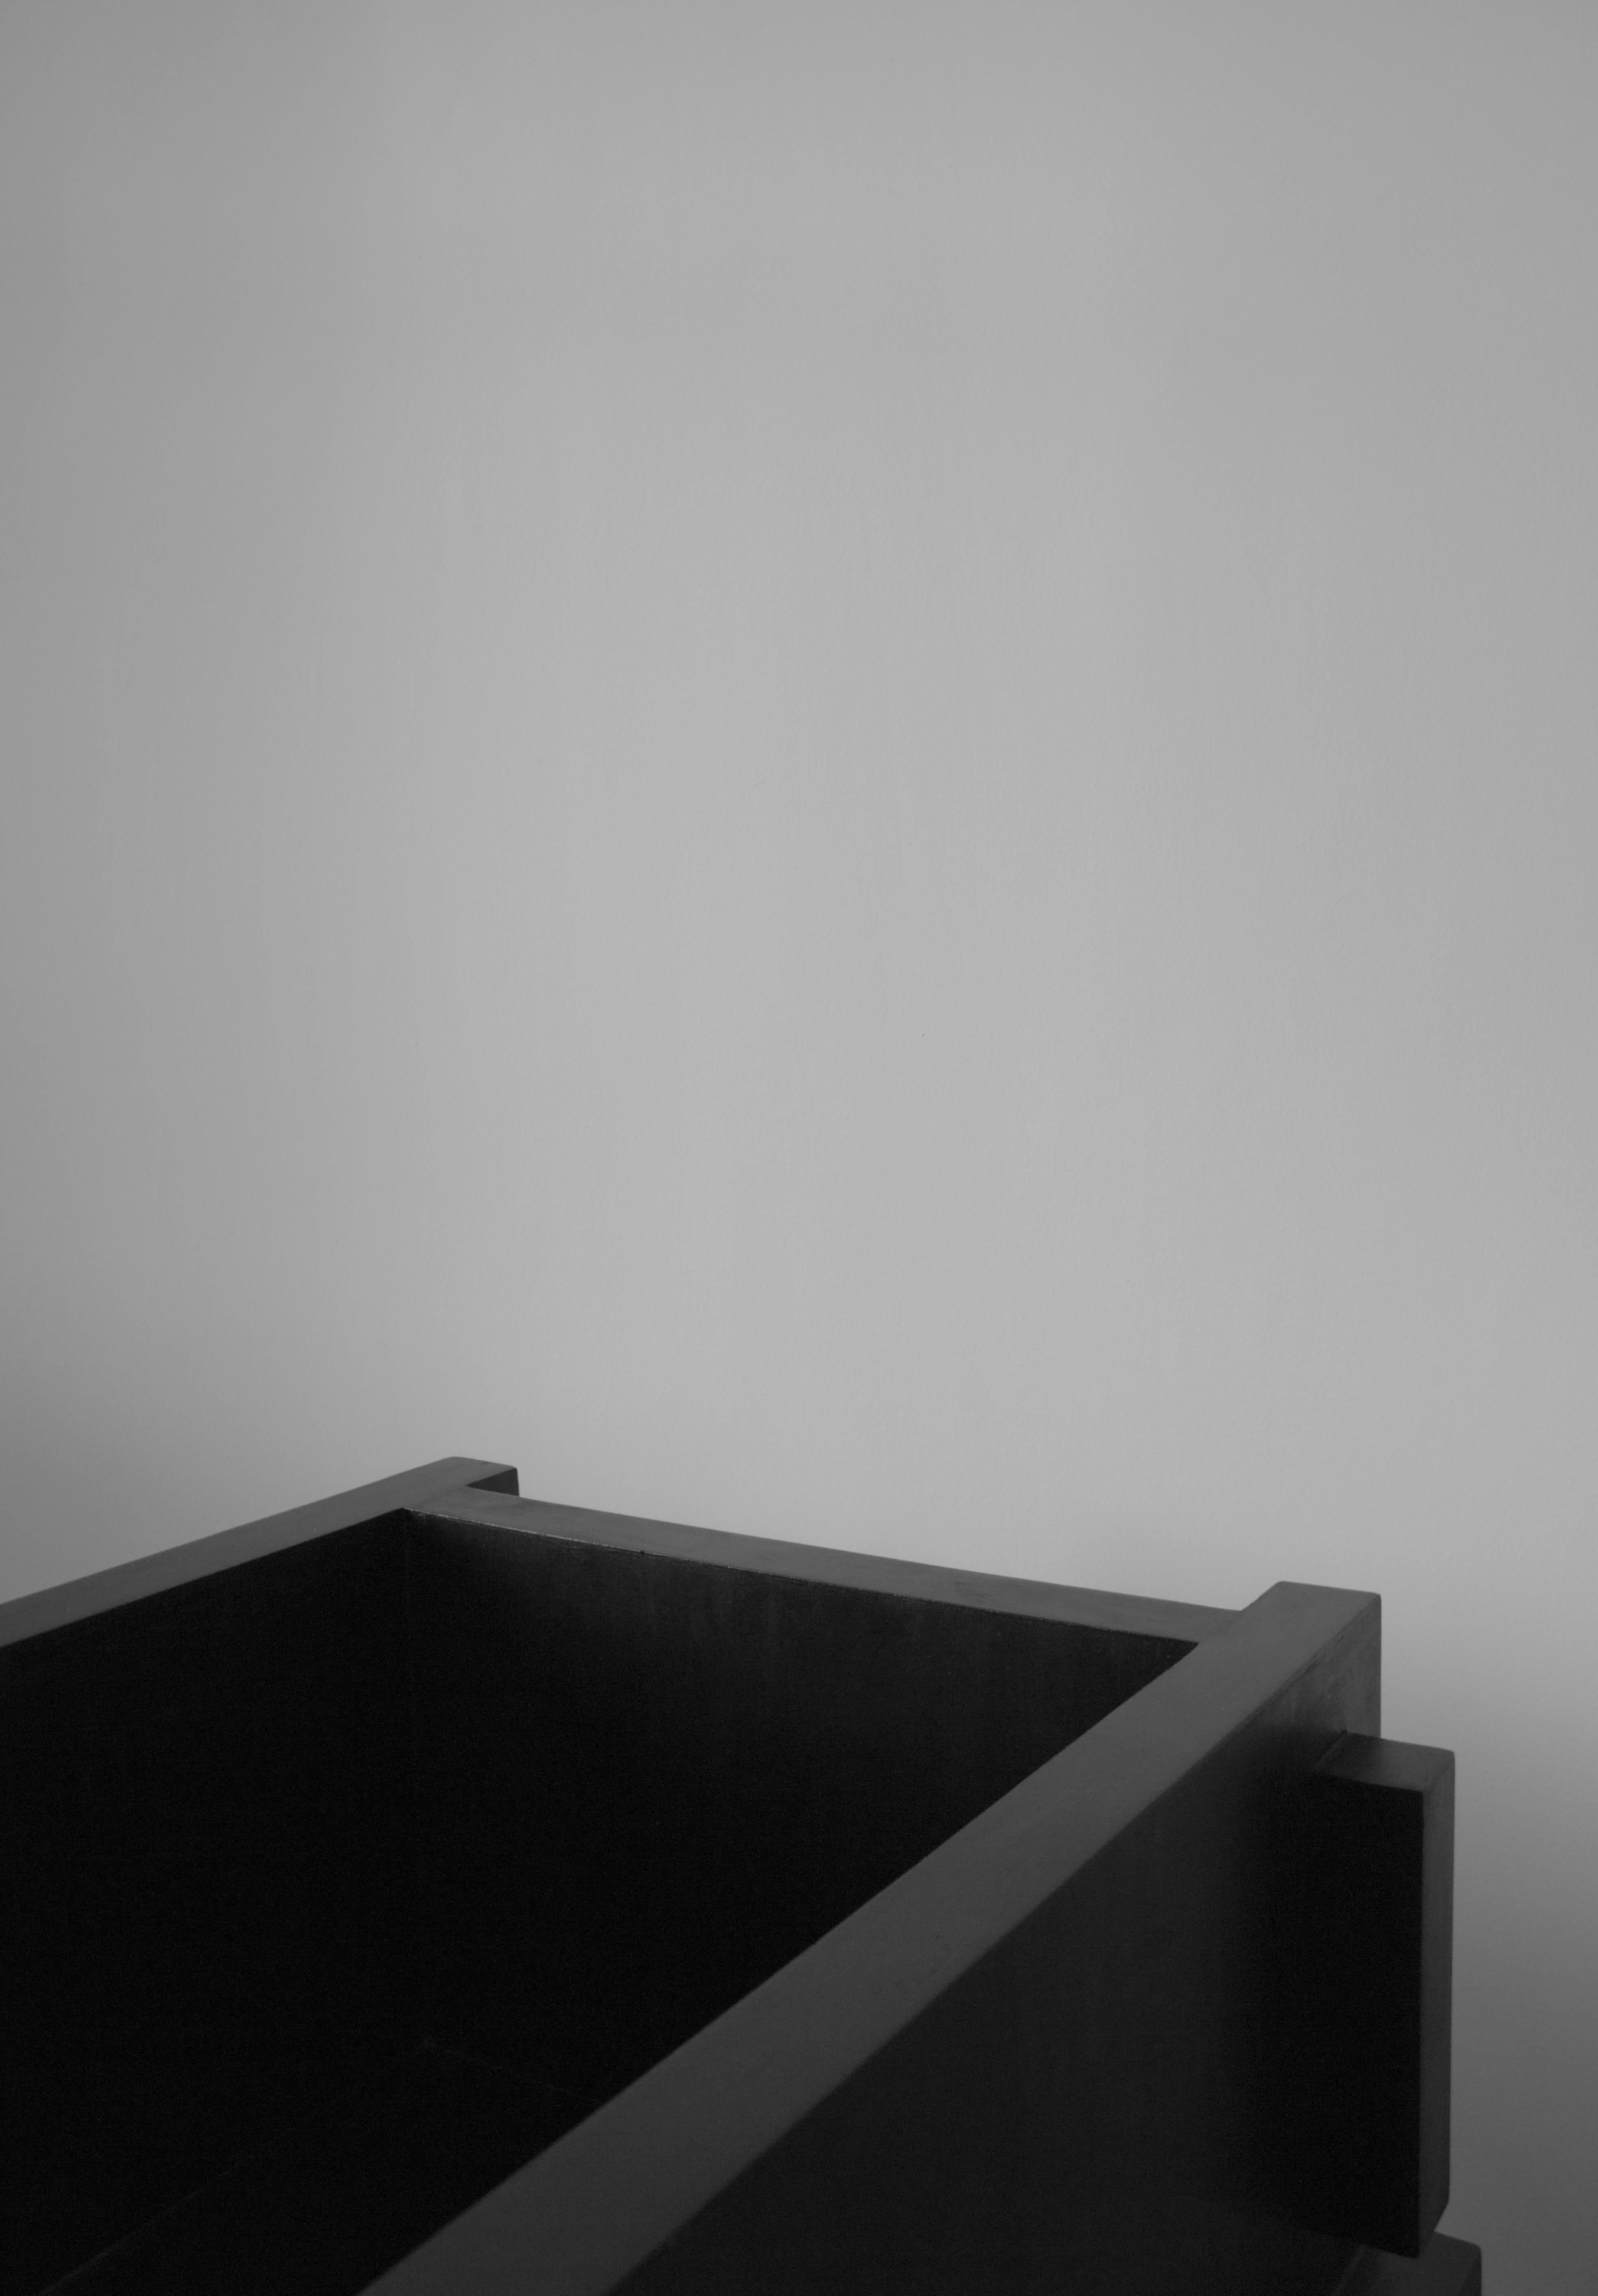 Chaise longue ItooRaba de Sizar Alexis
Dimensions : longueur 60cm, largeur 60cm,
hauteur 70cm, hauteur du siège : 37cm
Disponible en noir teinté, blanc et pin naturel.
Pièces signées.

Une série de meubles qui adopte des formes géométriques.